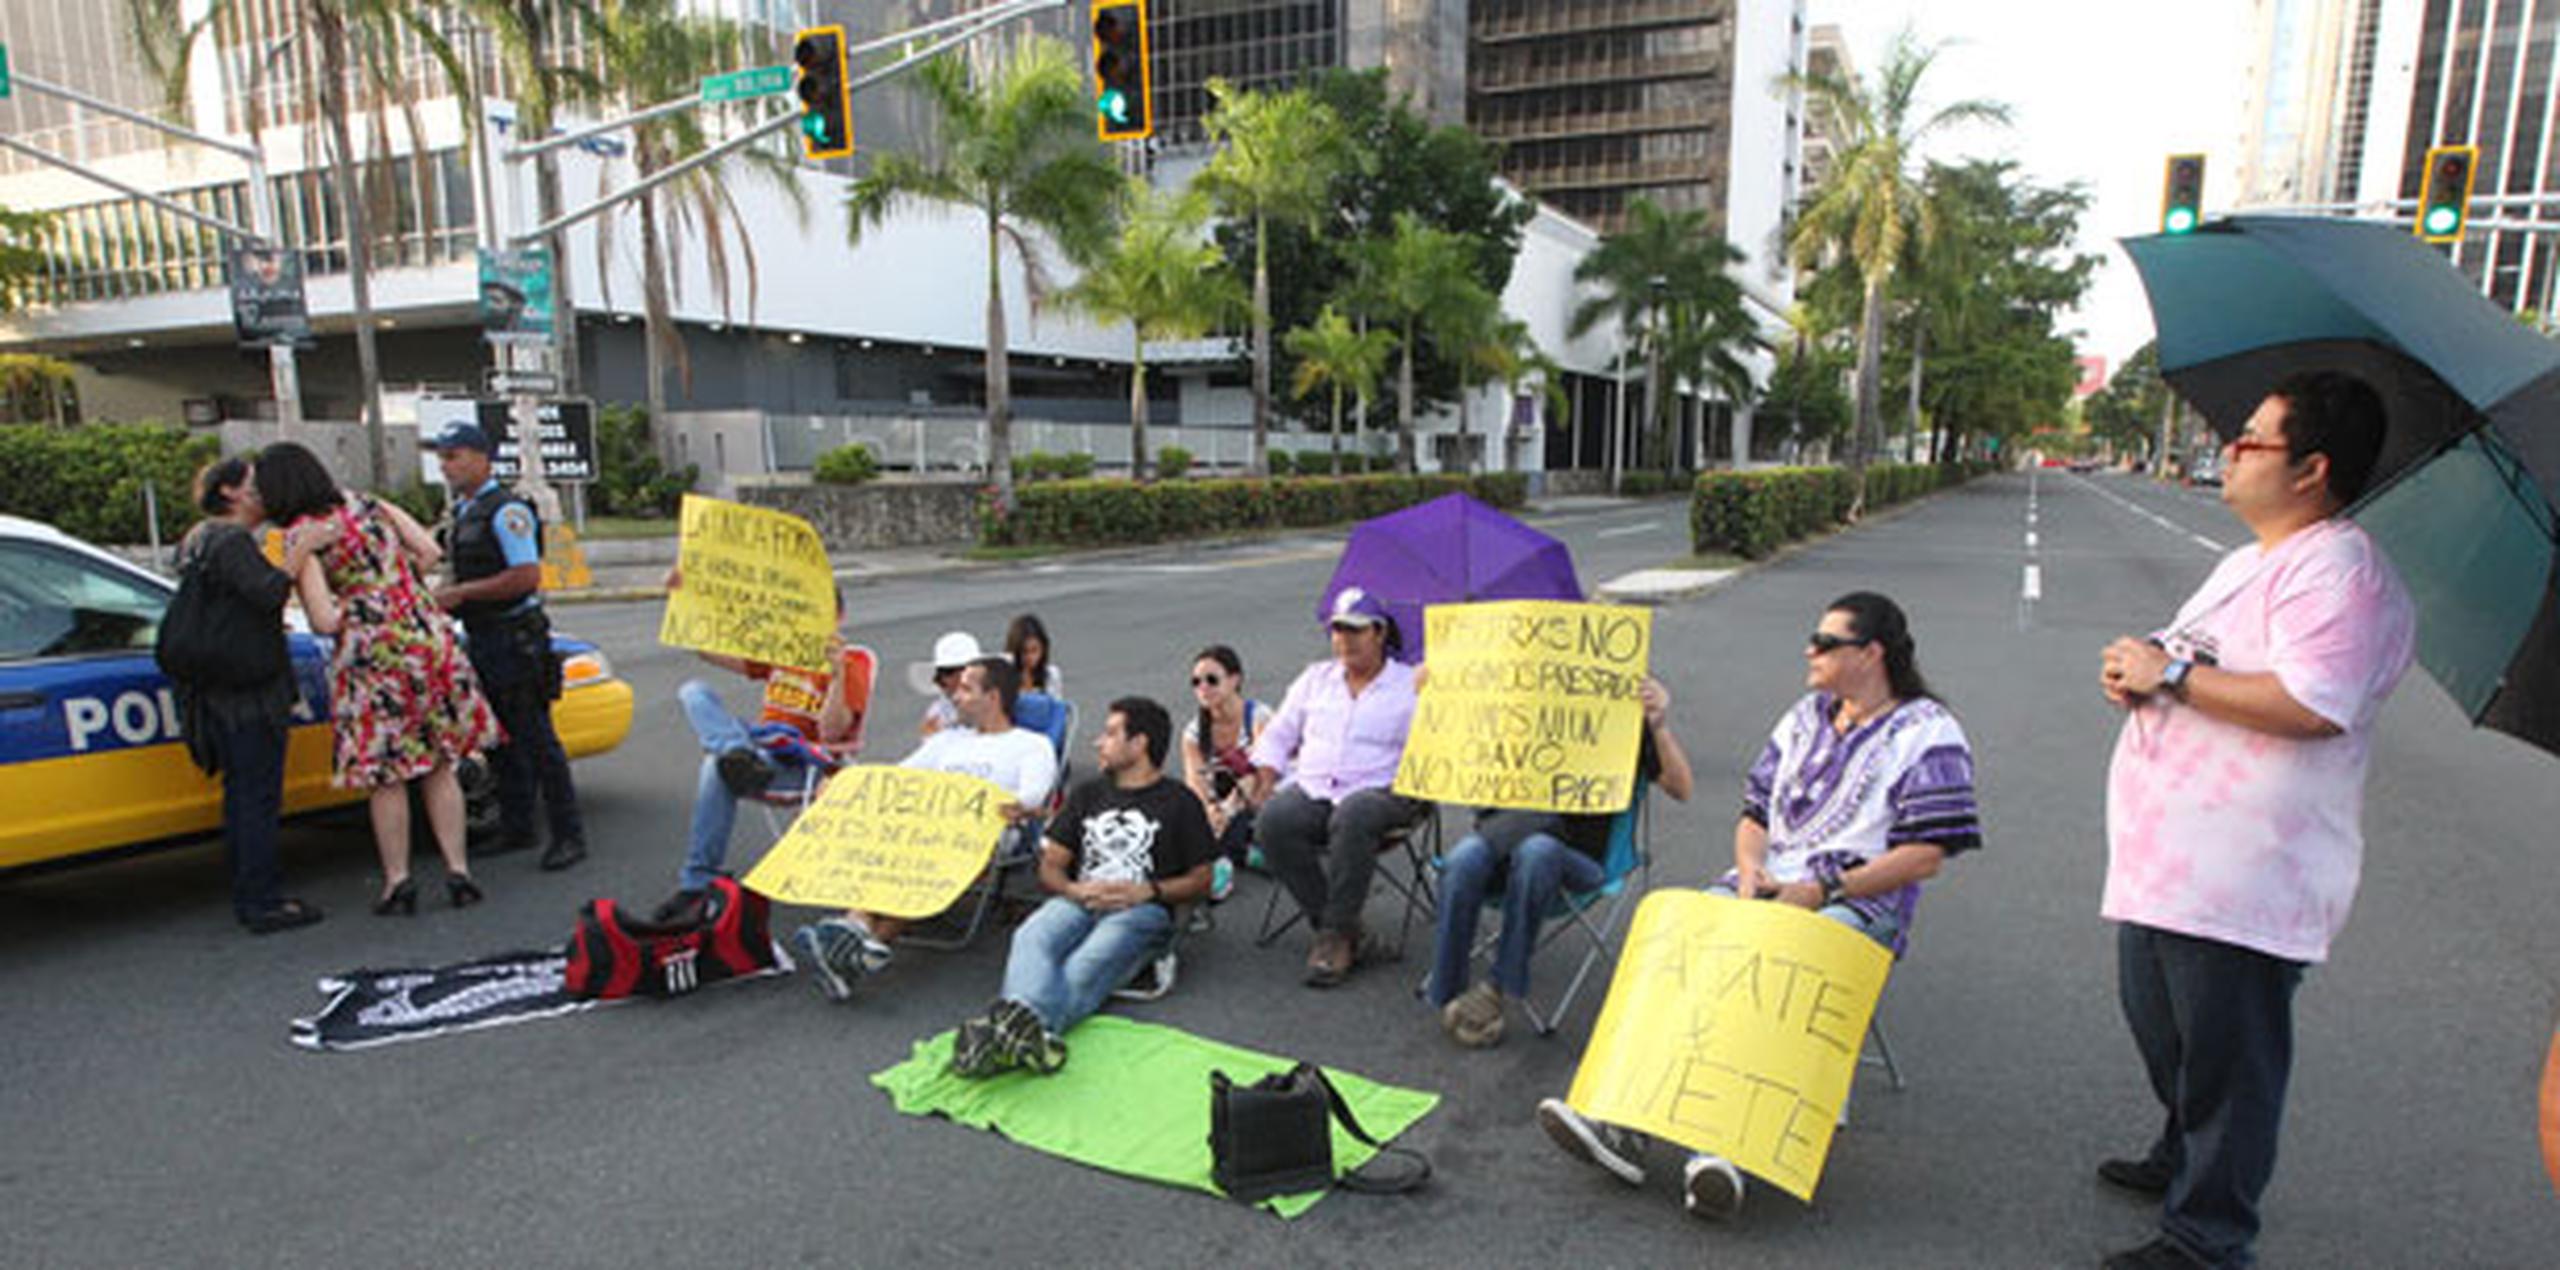 Los manifestantes se sentaron en la intersección de la avenida Chardón con la avenida Luis Muñoz Marín en la Milla de Oro en Hato Rey. (alex.figueroa@gfrmedia.com)
